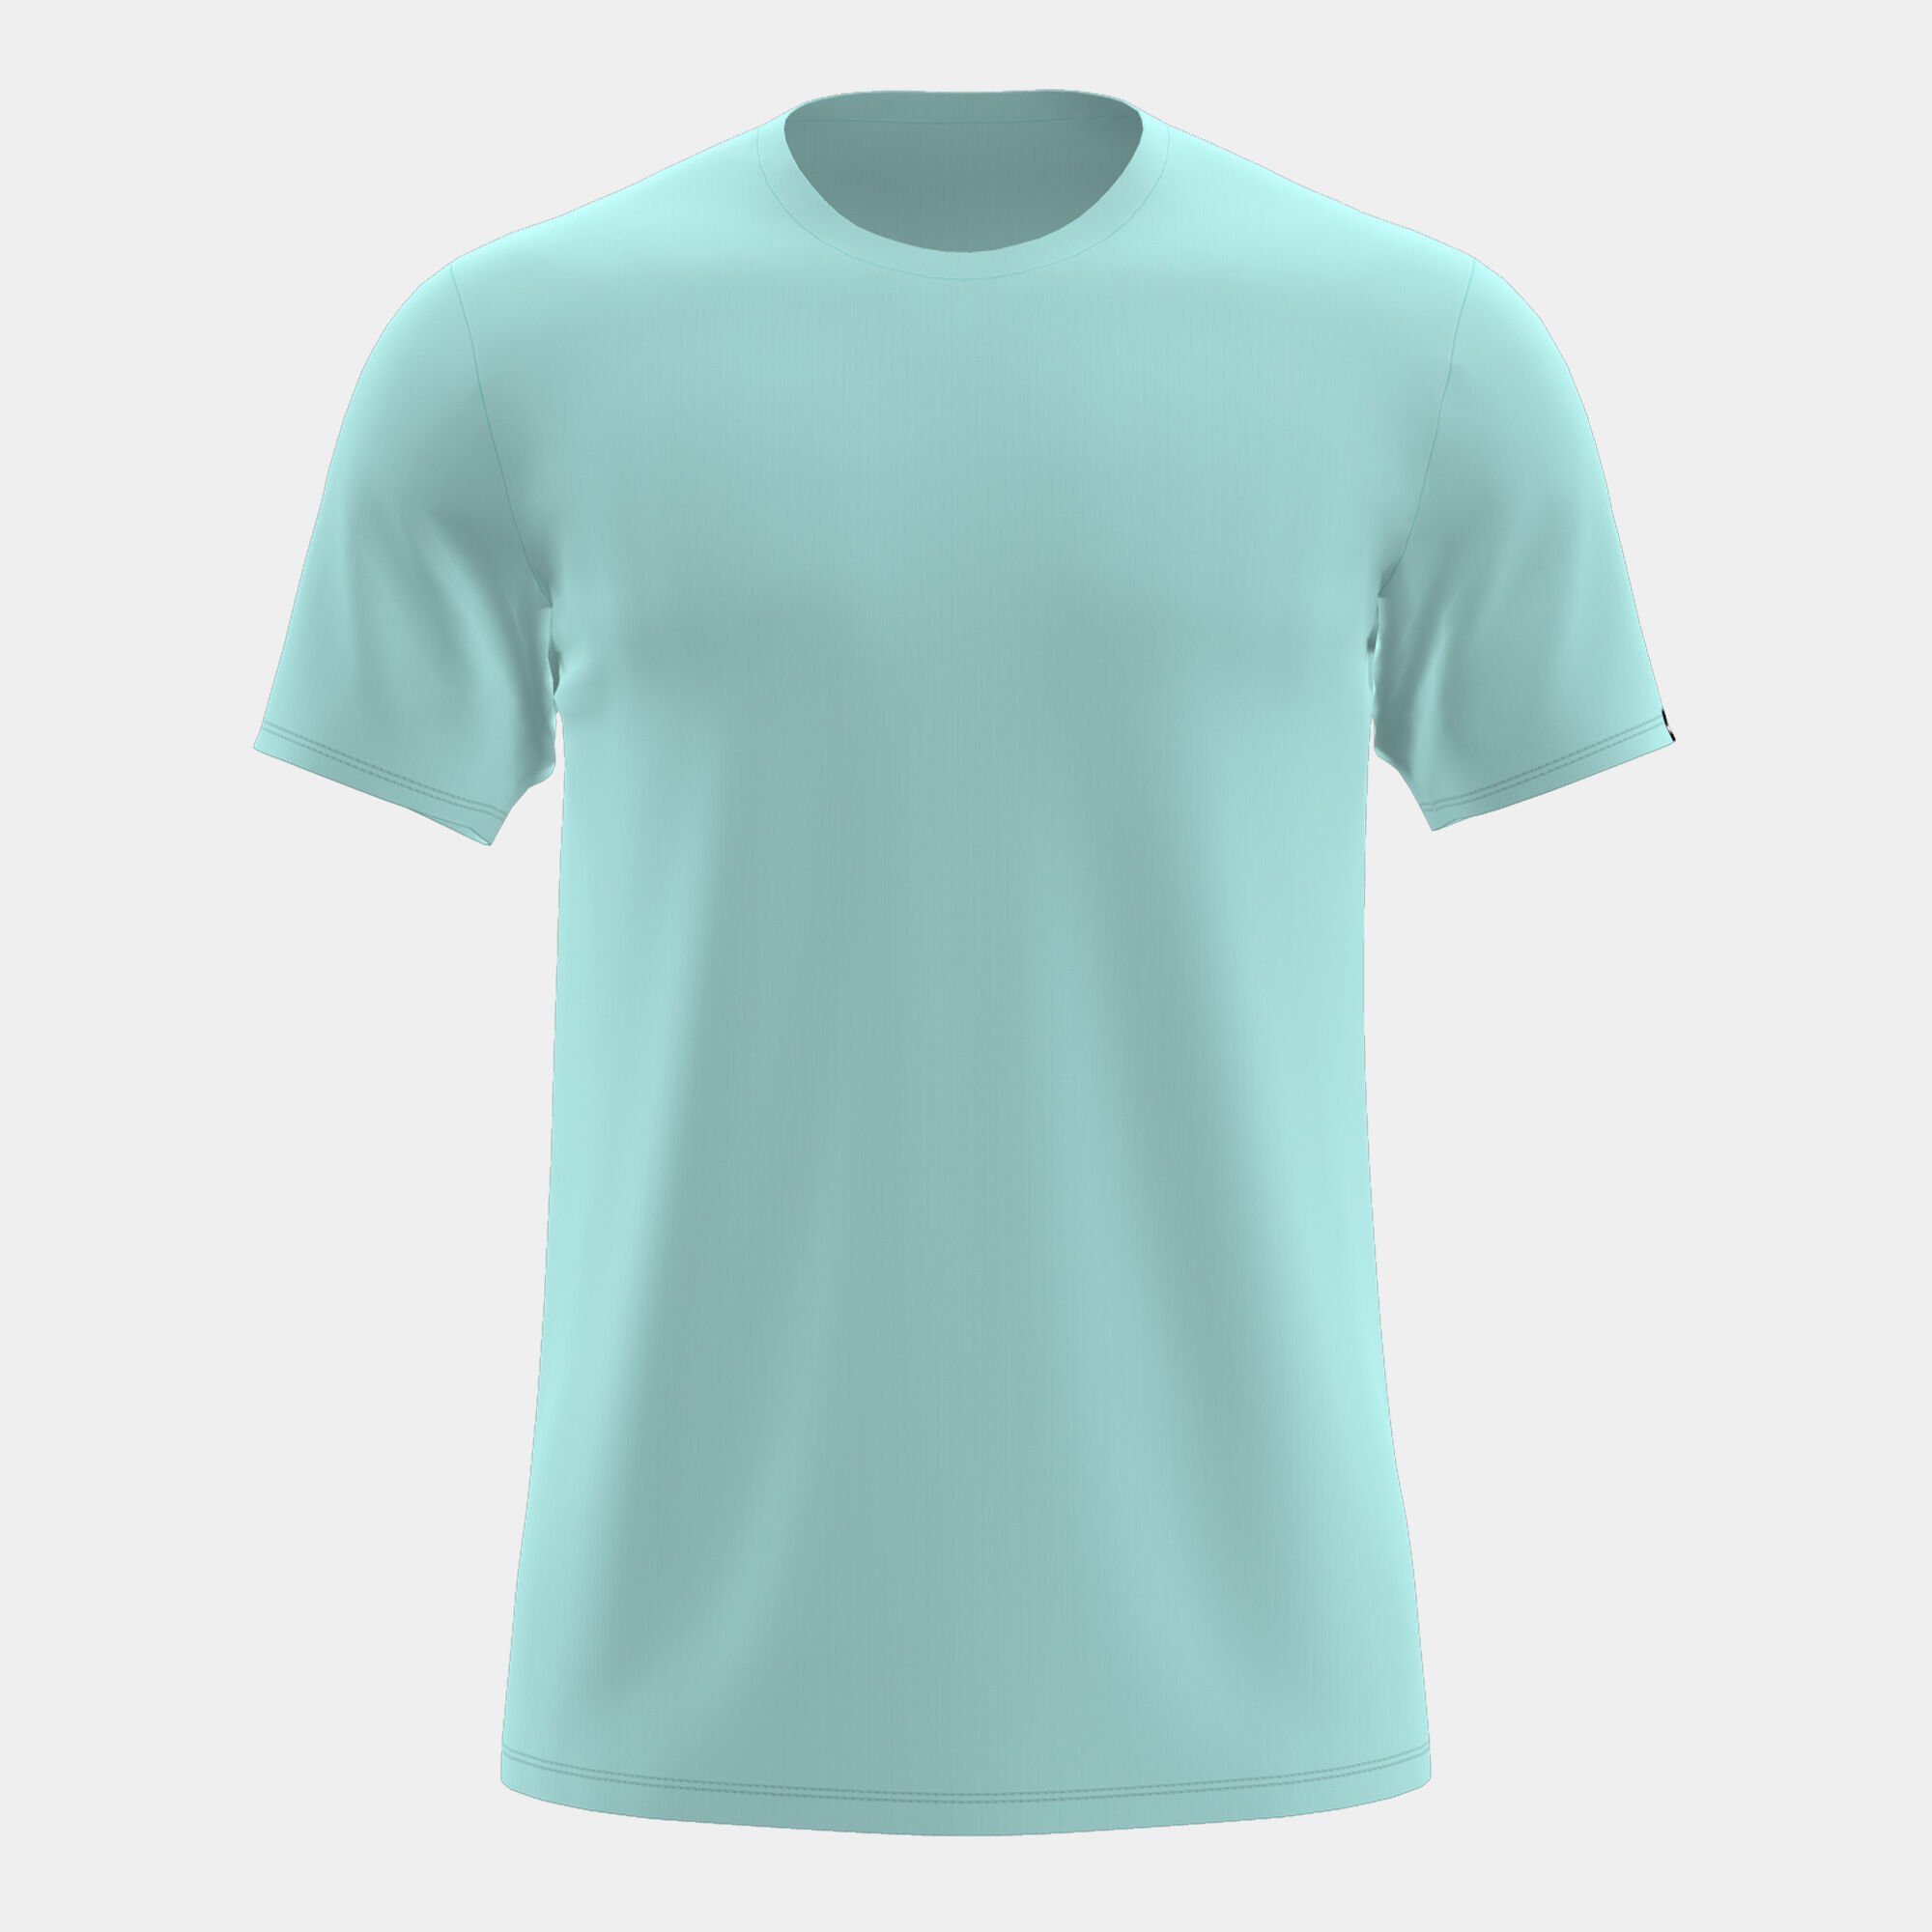 Shirt short sleeve man Desert turquoise